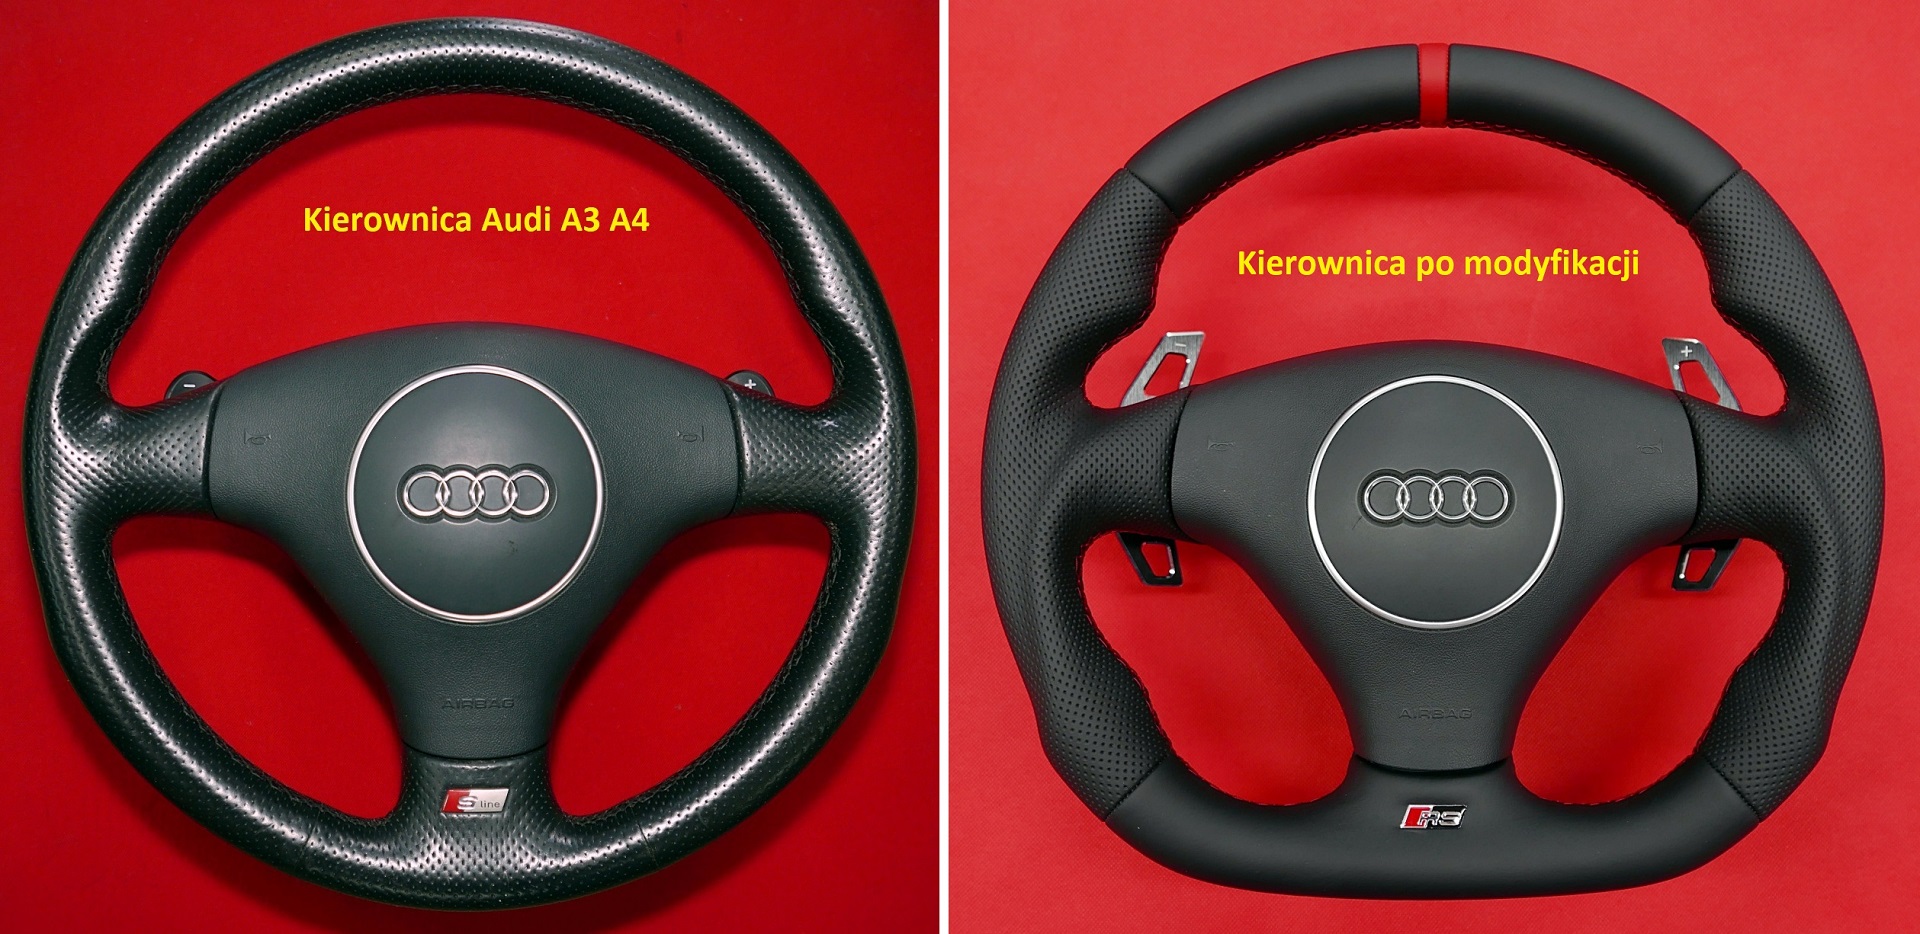 Spłaszczenie ścięcie zmiana kształtu kierownica Audi S3 S4 RS S-Line